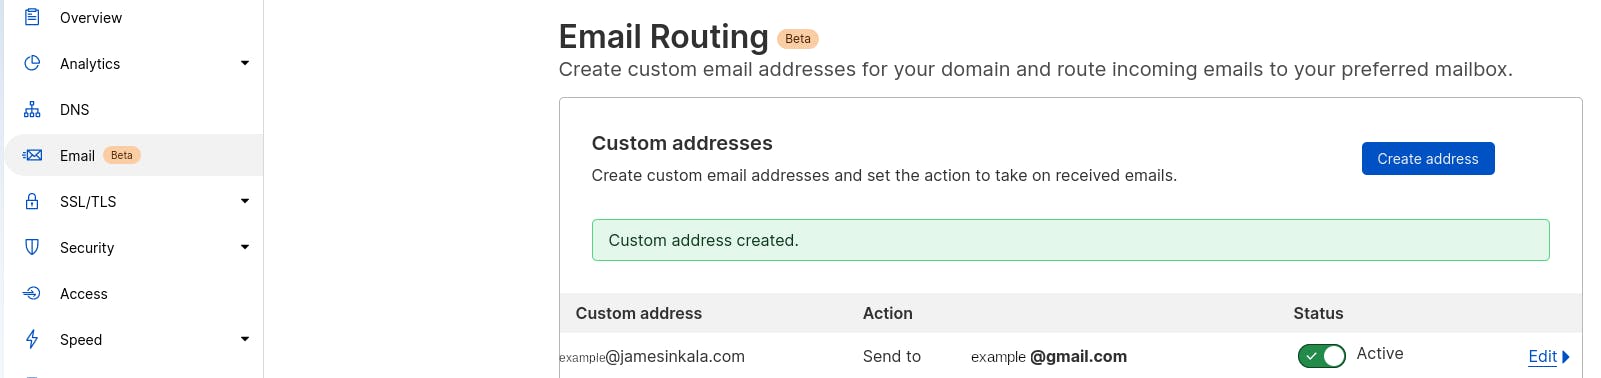 Successfully added a custom address